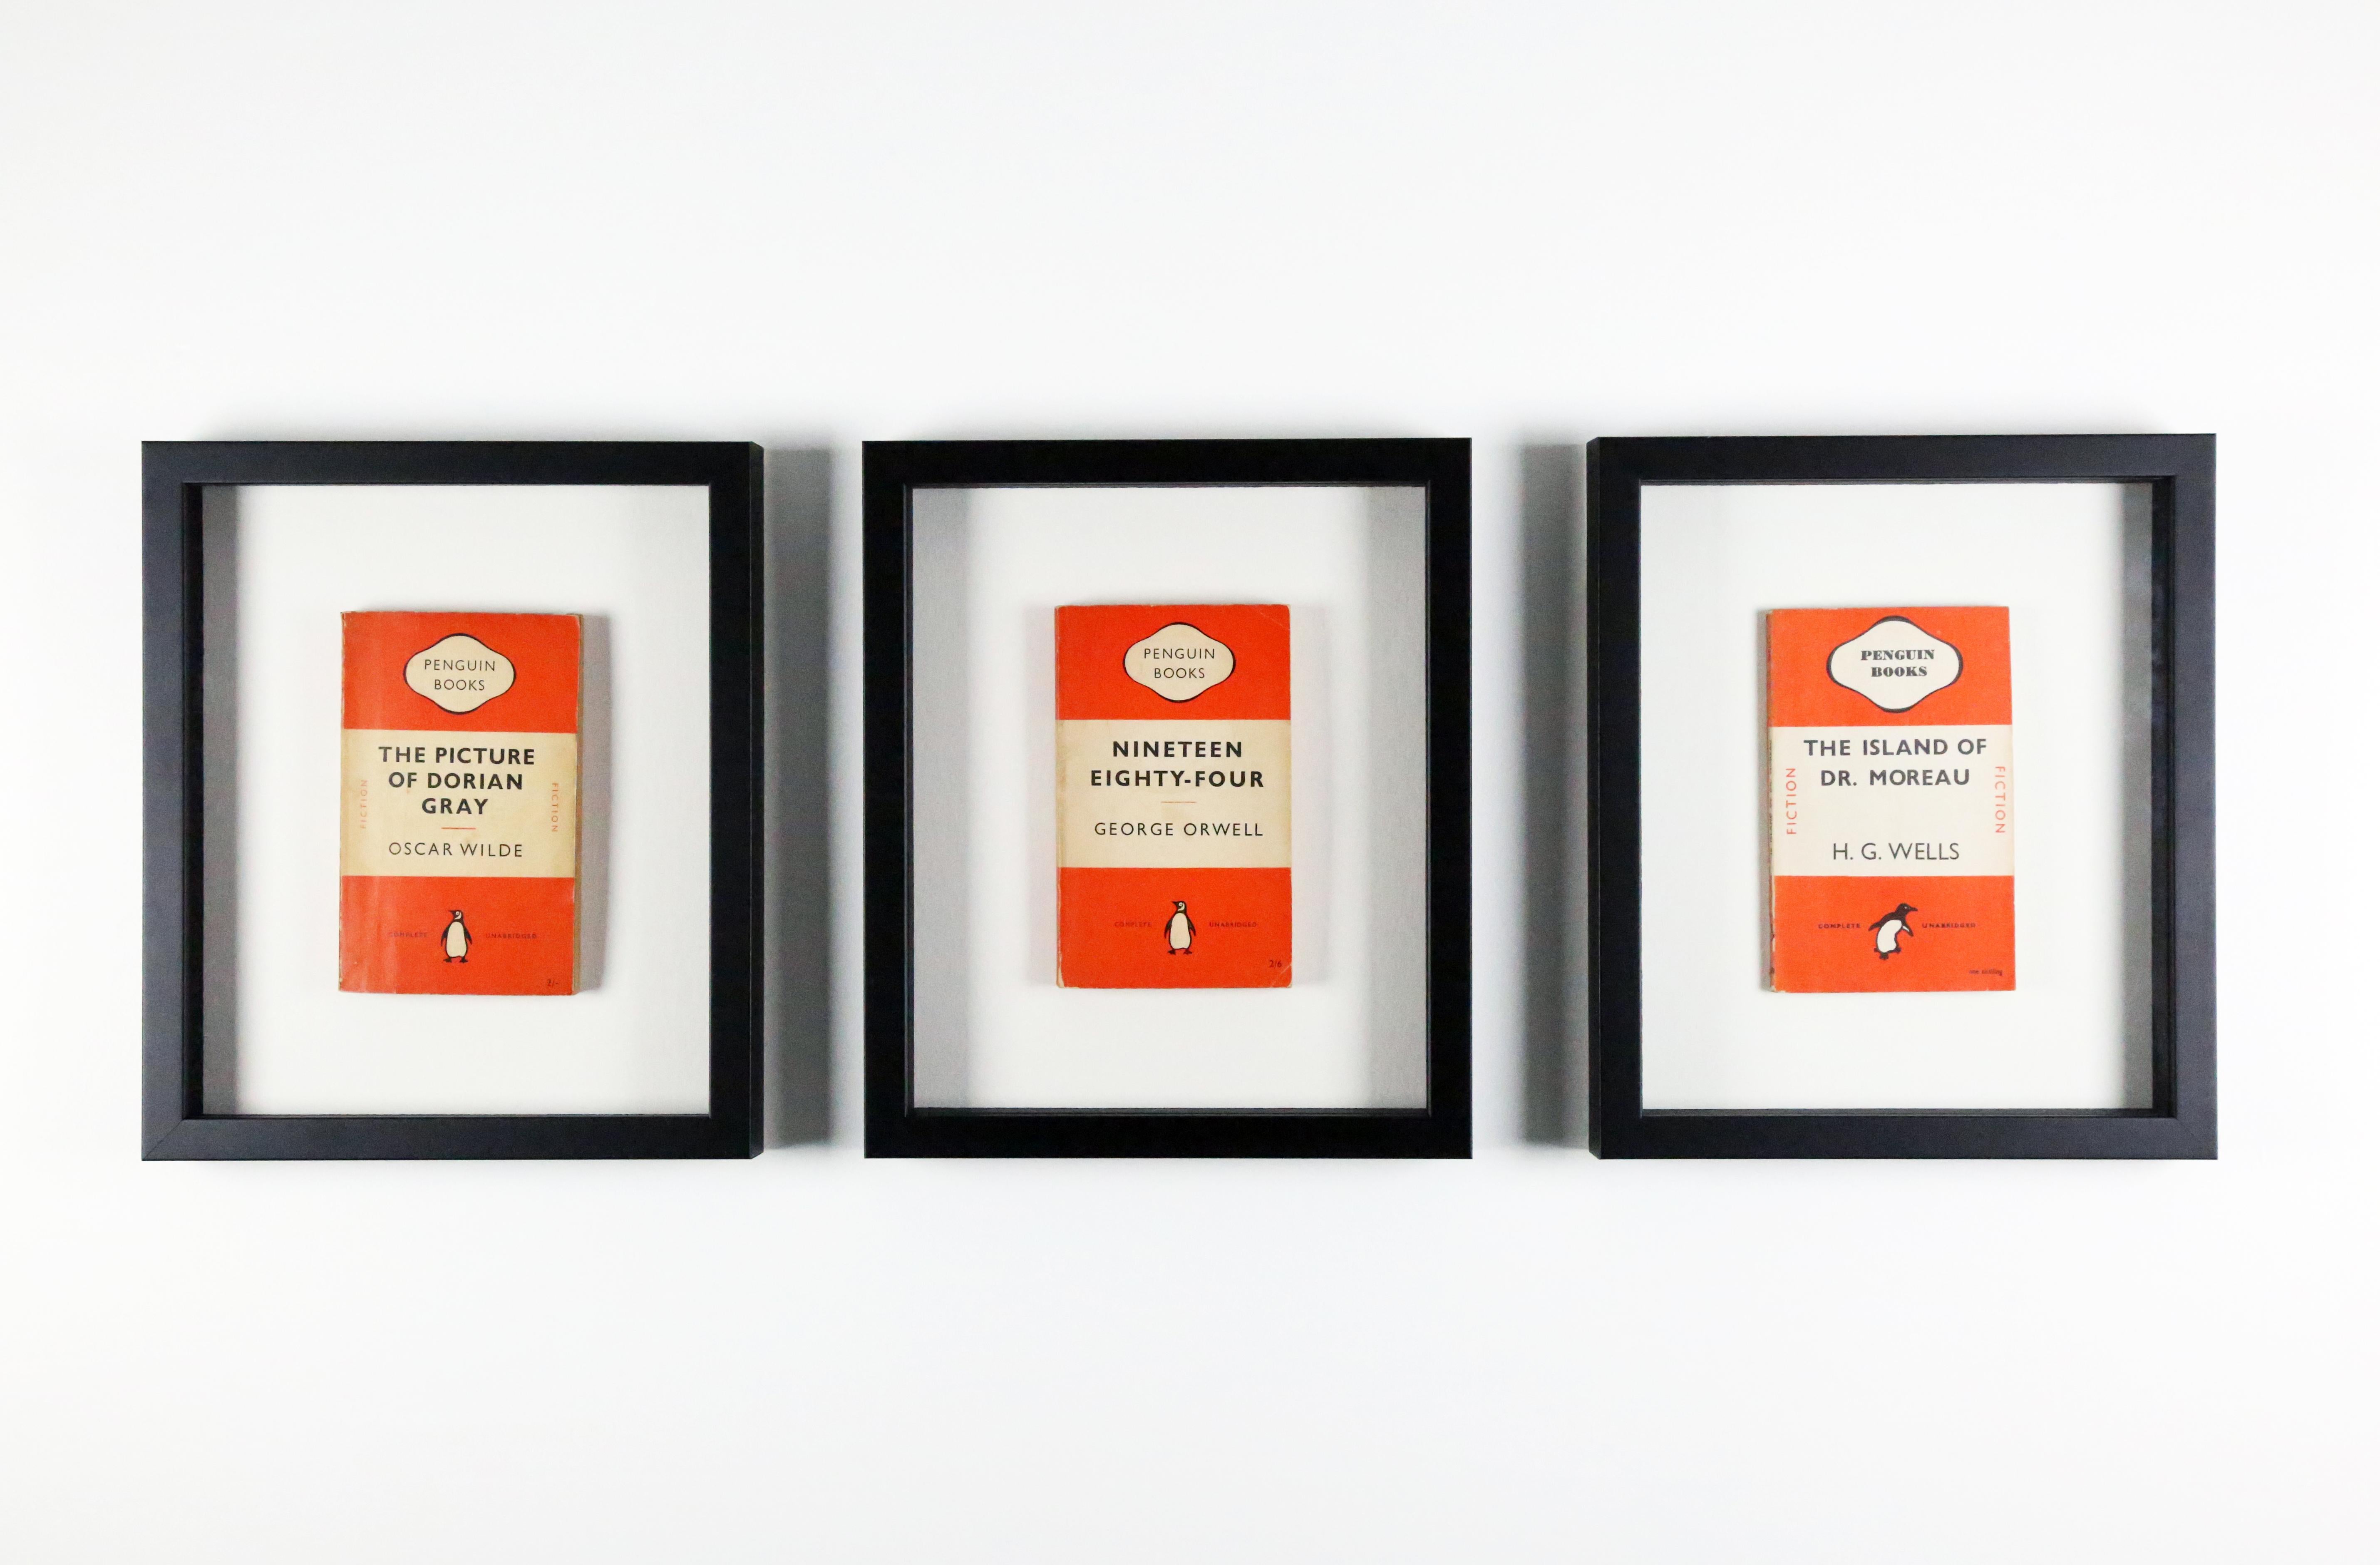 Les livres Penguin ont été fondés en 1935 et sont connus pour leur design emblématique composé de deux bandes de couleur unies prenant en sandwich une bande blanche. Les couvertures les plus courantes étaient l'orange pour les romans de Pingouin, le